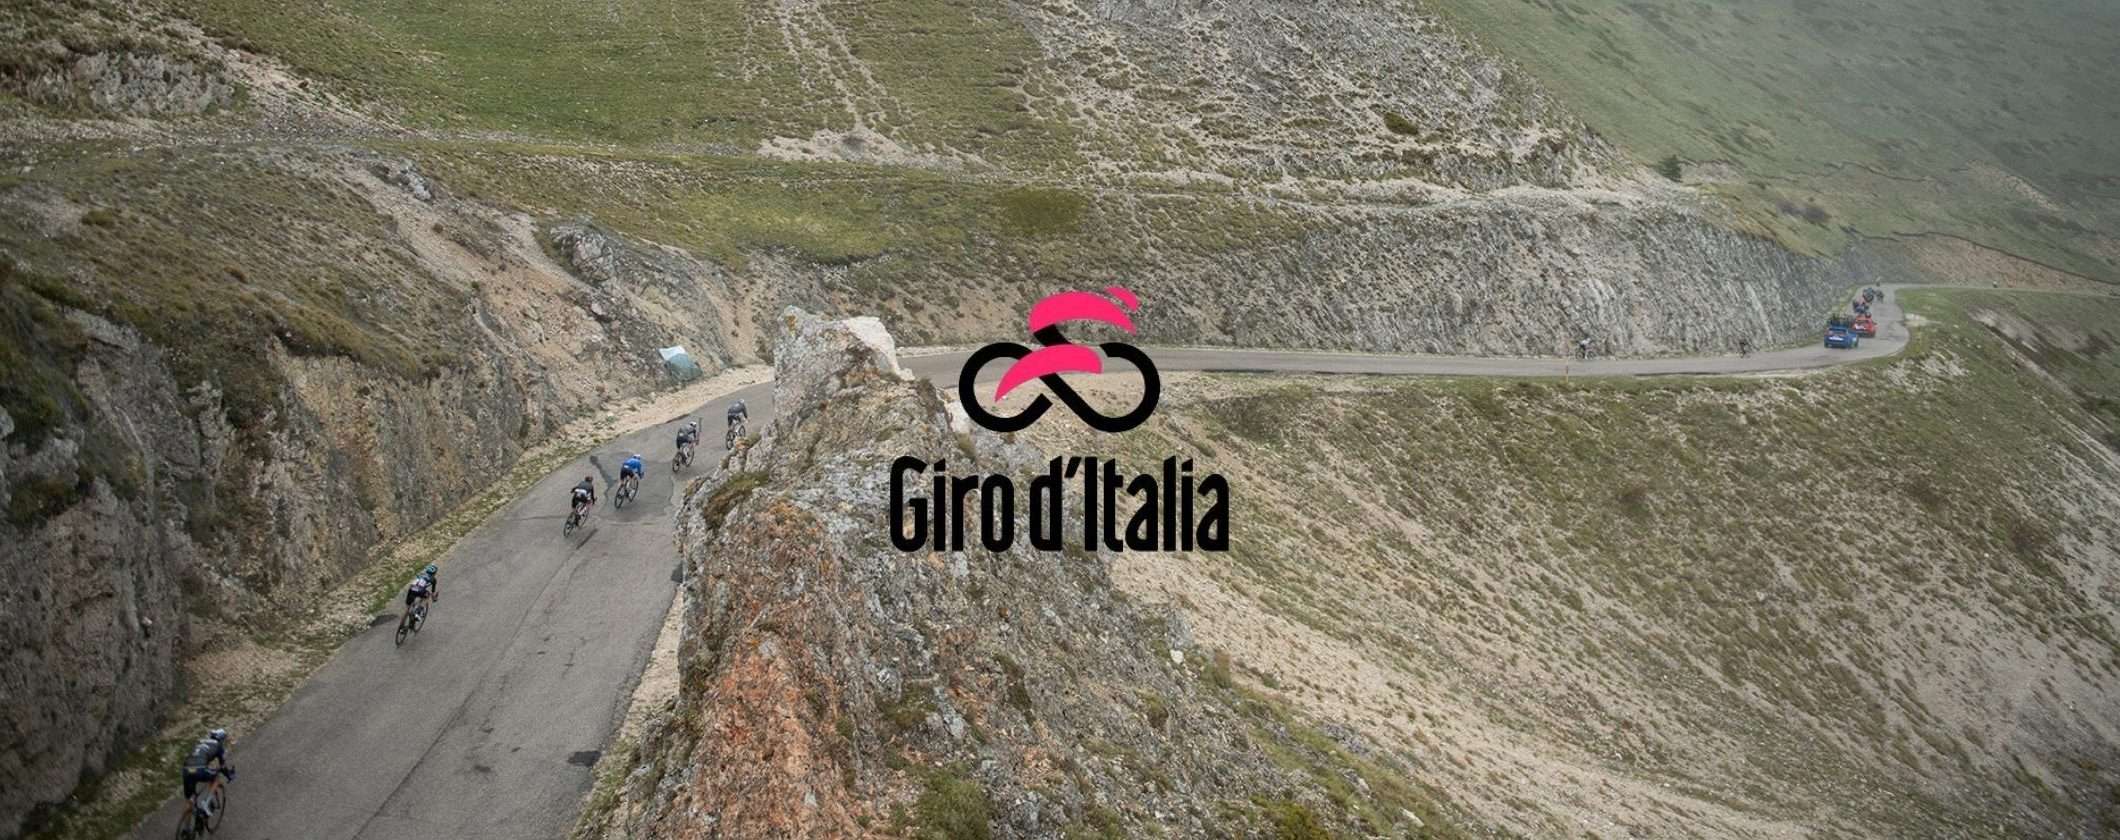 Giro d'Italia: come vederlo in streaming grazie a una VPN